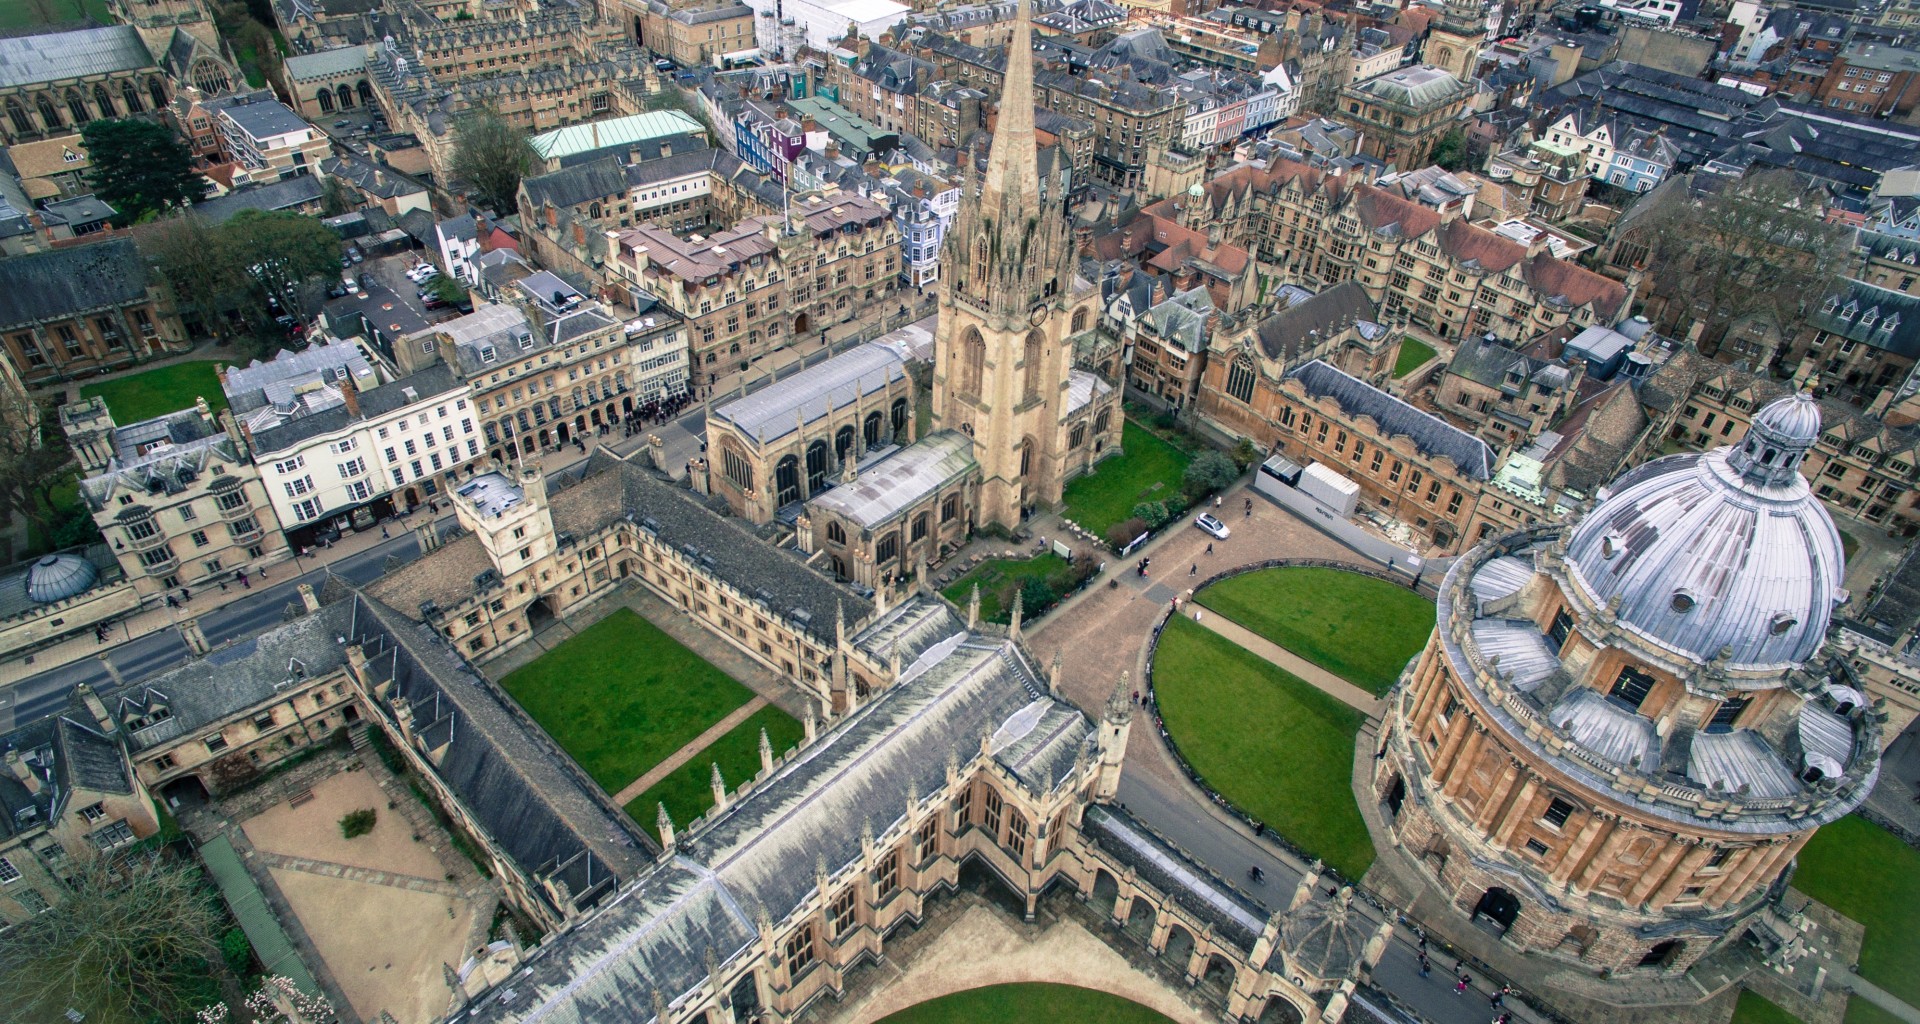 Vista principal de la universidad de Oxford, Inglaterra.